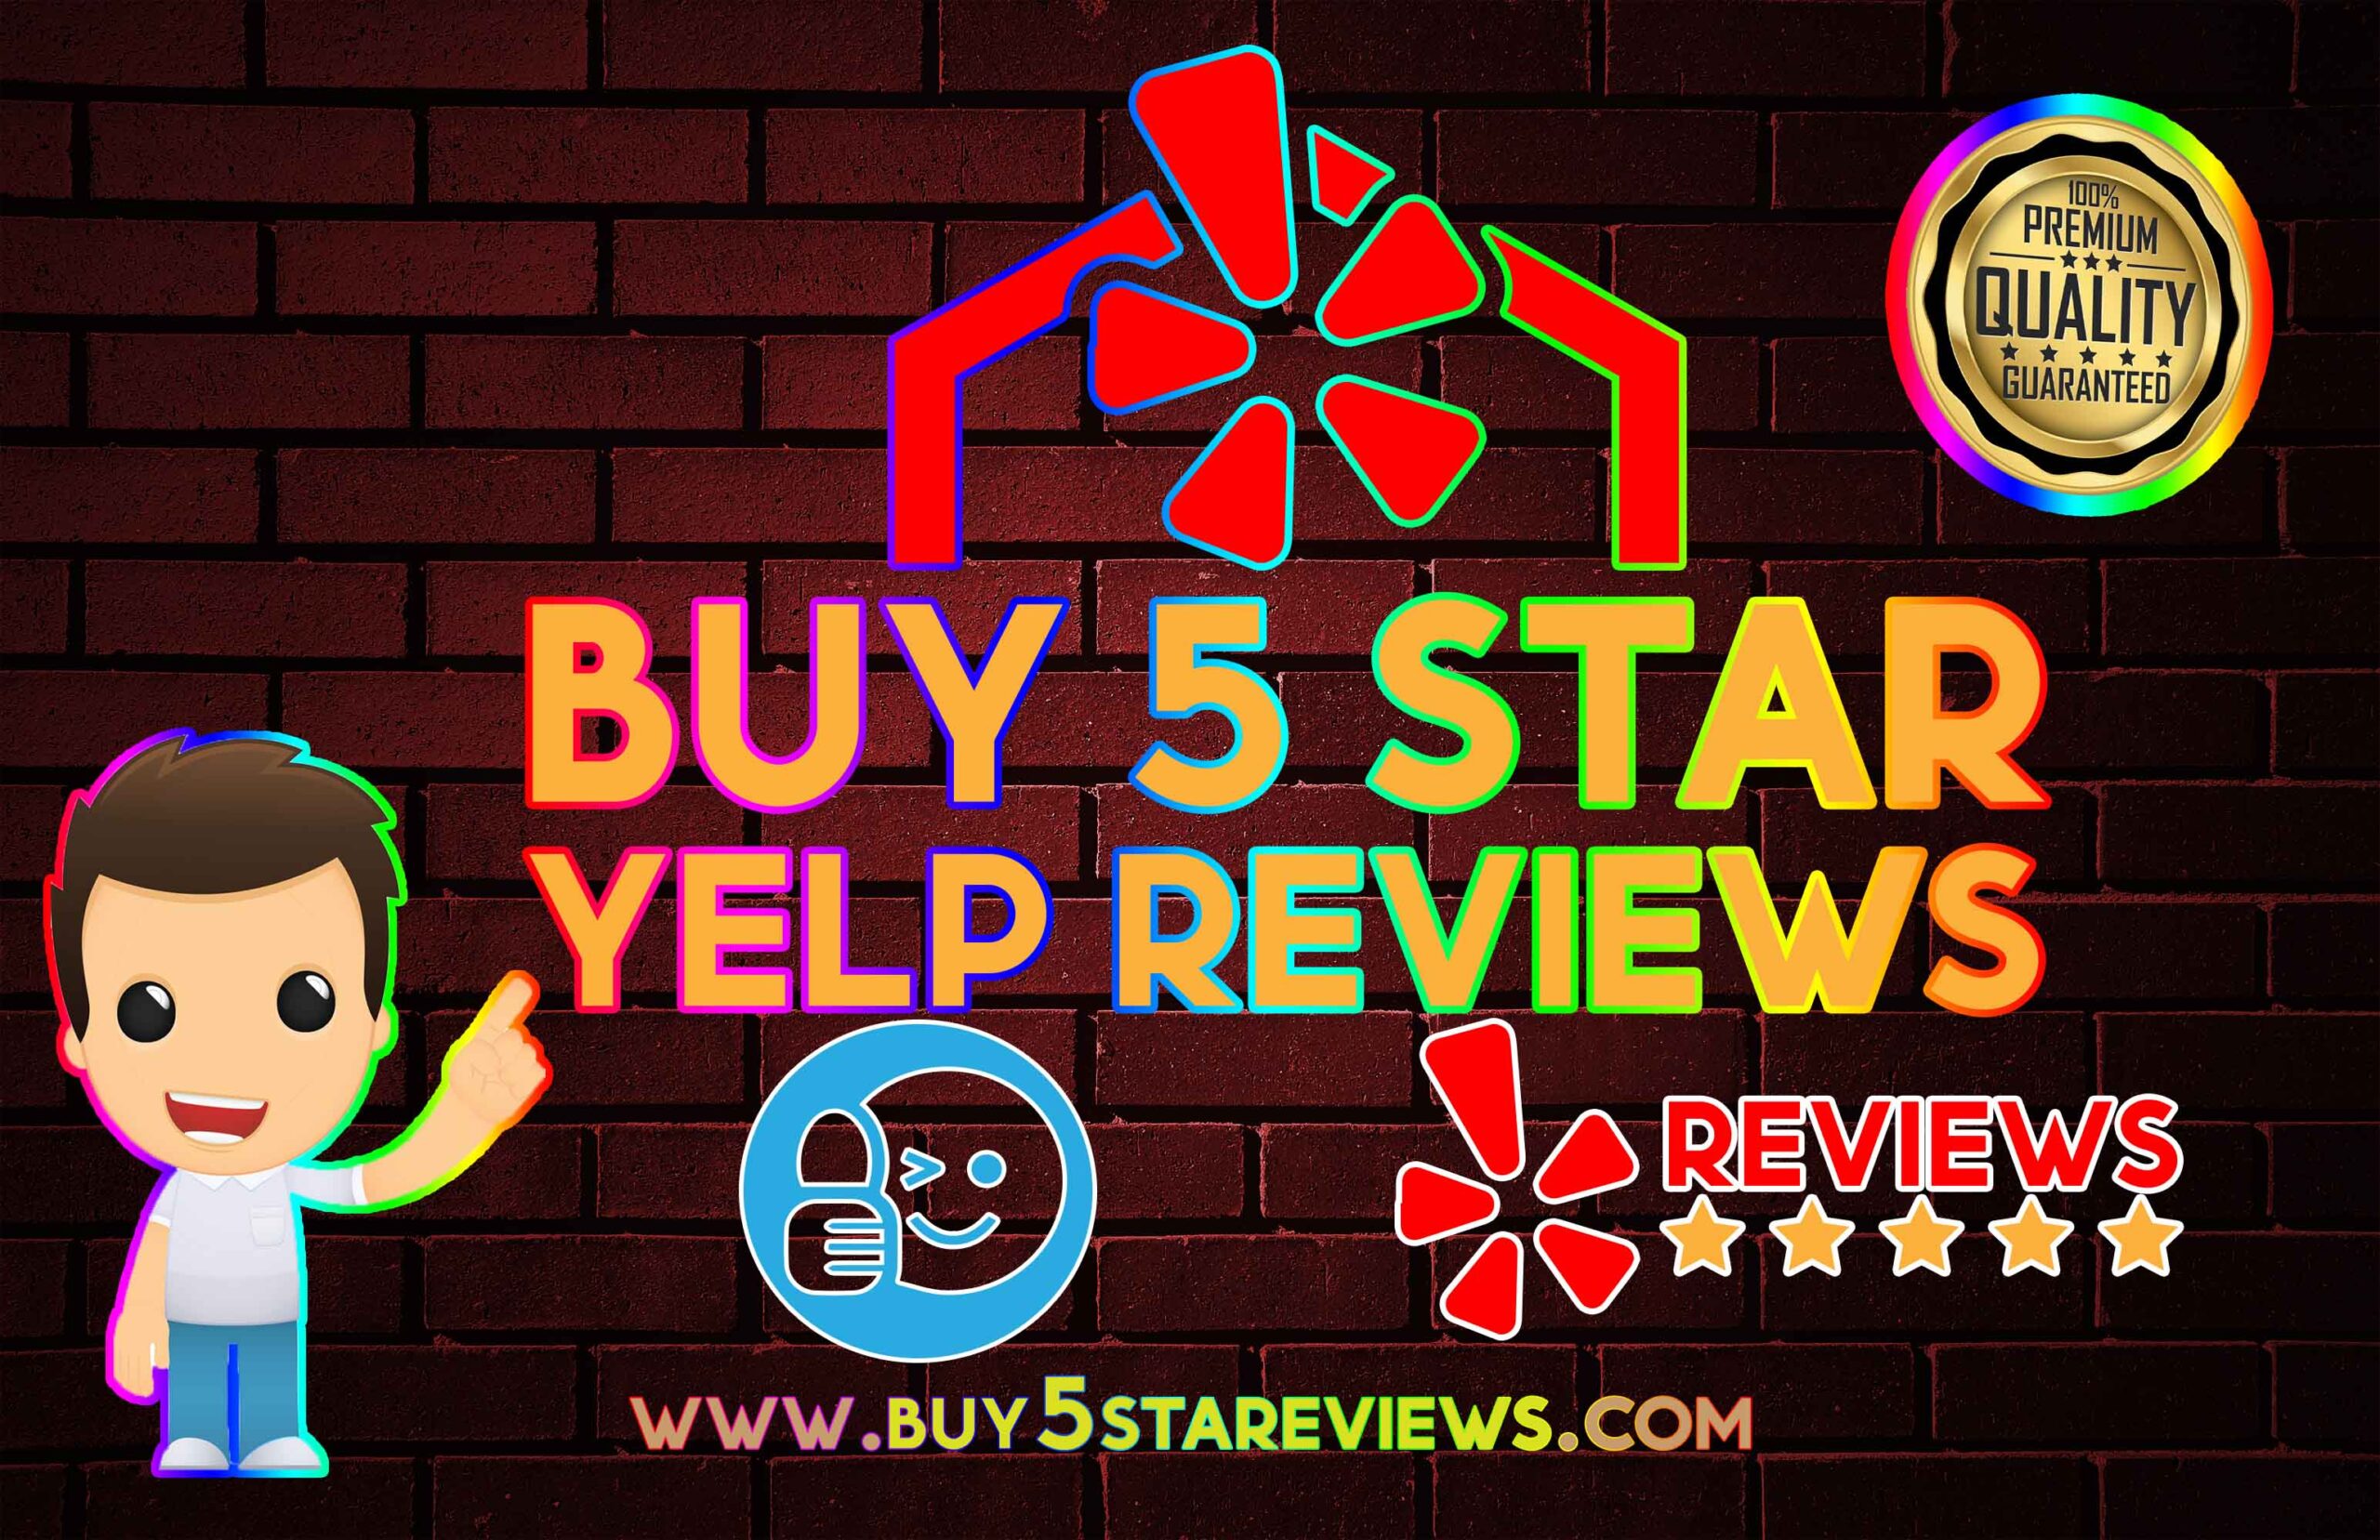 Buy 5 Star Yelp Reviews